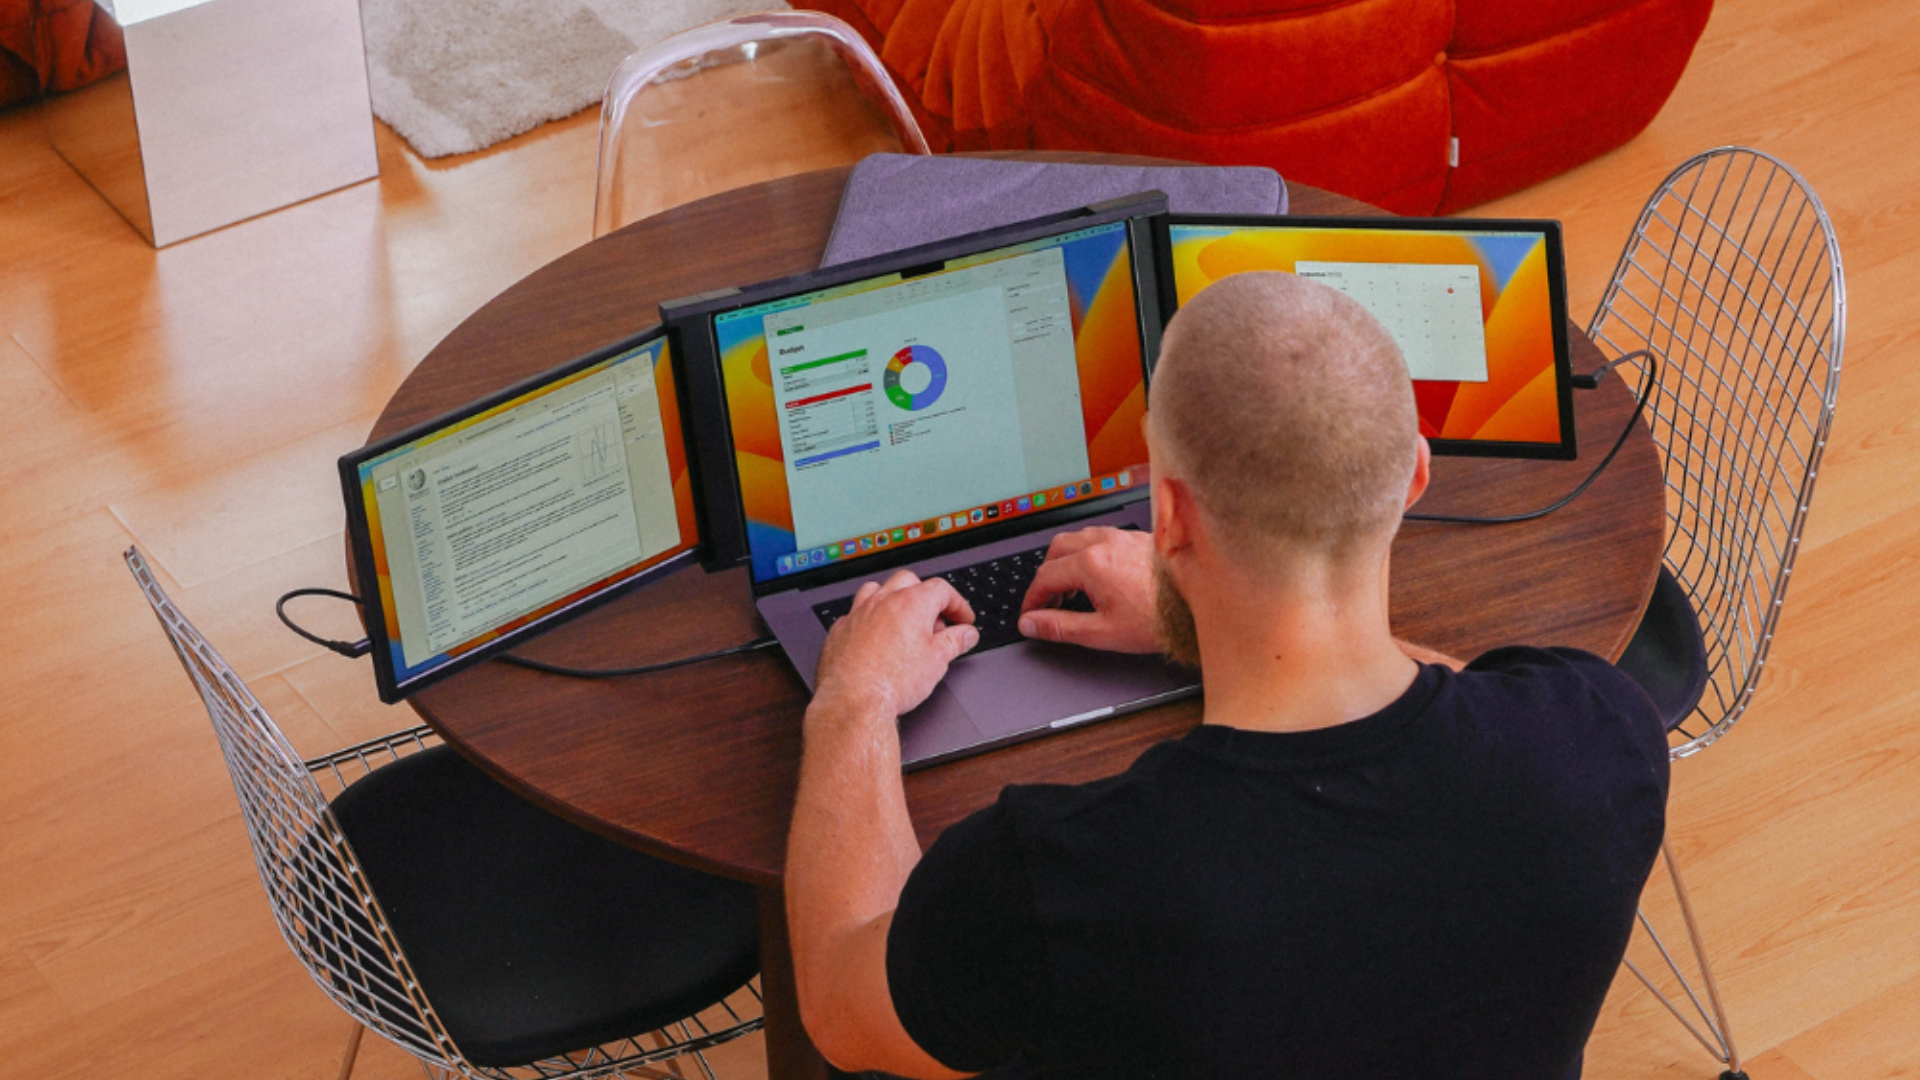 Blerron Tri-Screen setup op laptop, toont uitbreiding met drie extra schermen voor multitasking.